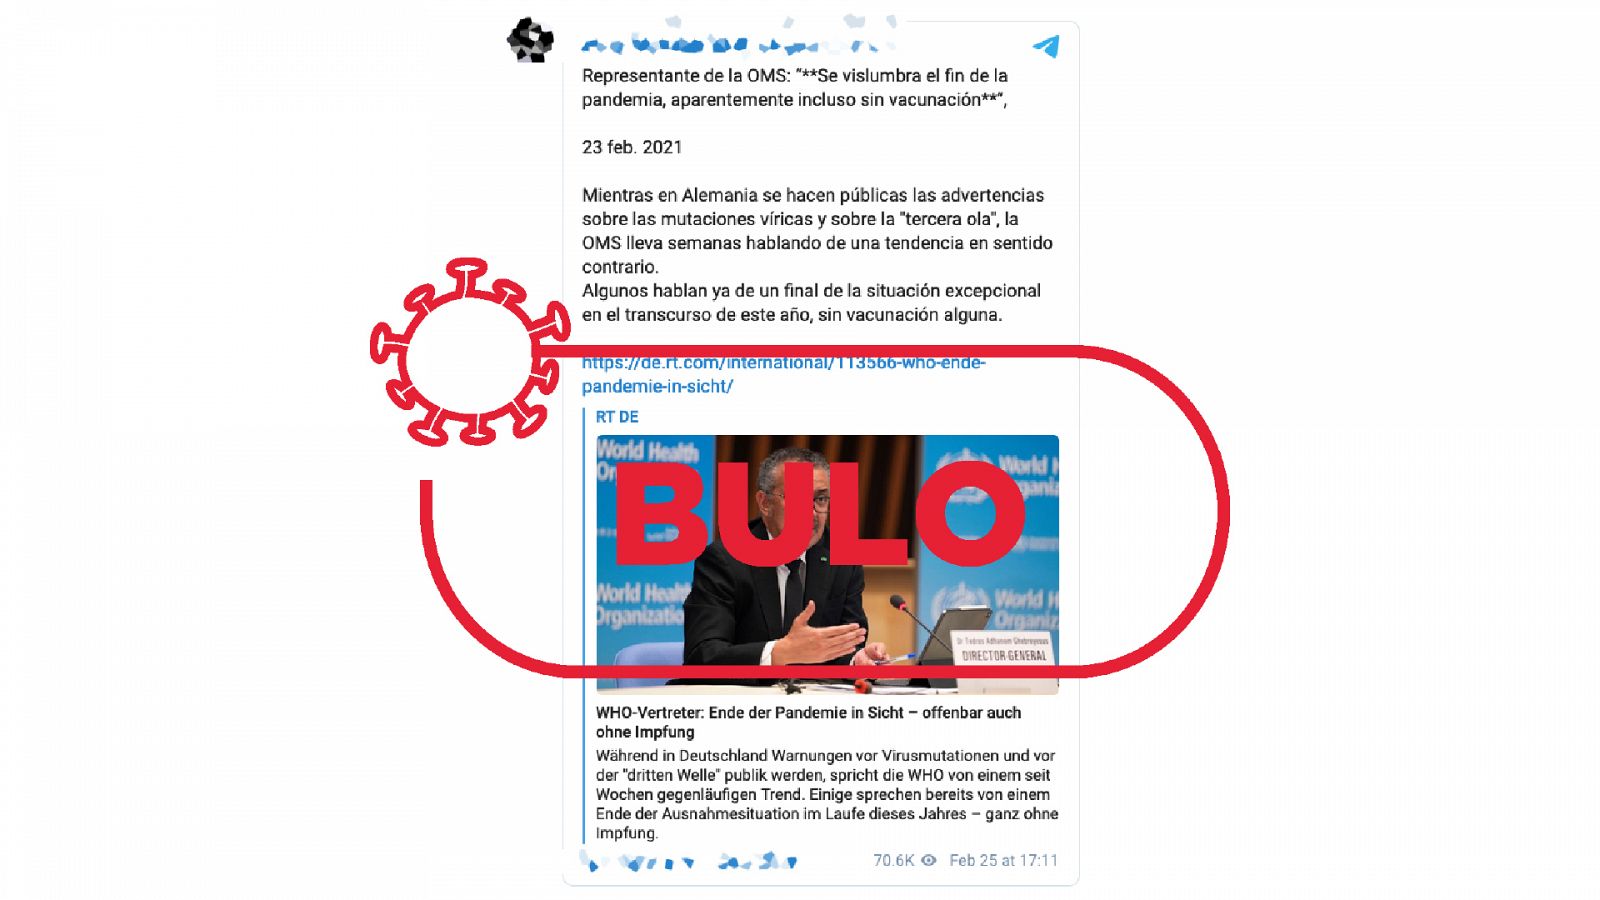 Captura del bulo con declaraciones falsas de la OMS sobre el fin de la pandemia sin vacunas, con el sello rojo de bulo encima